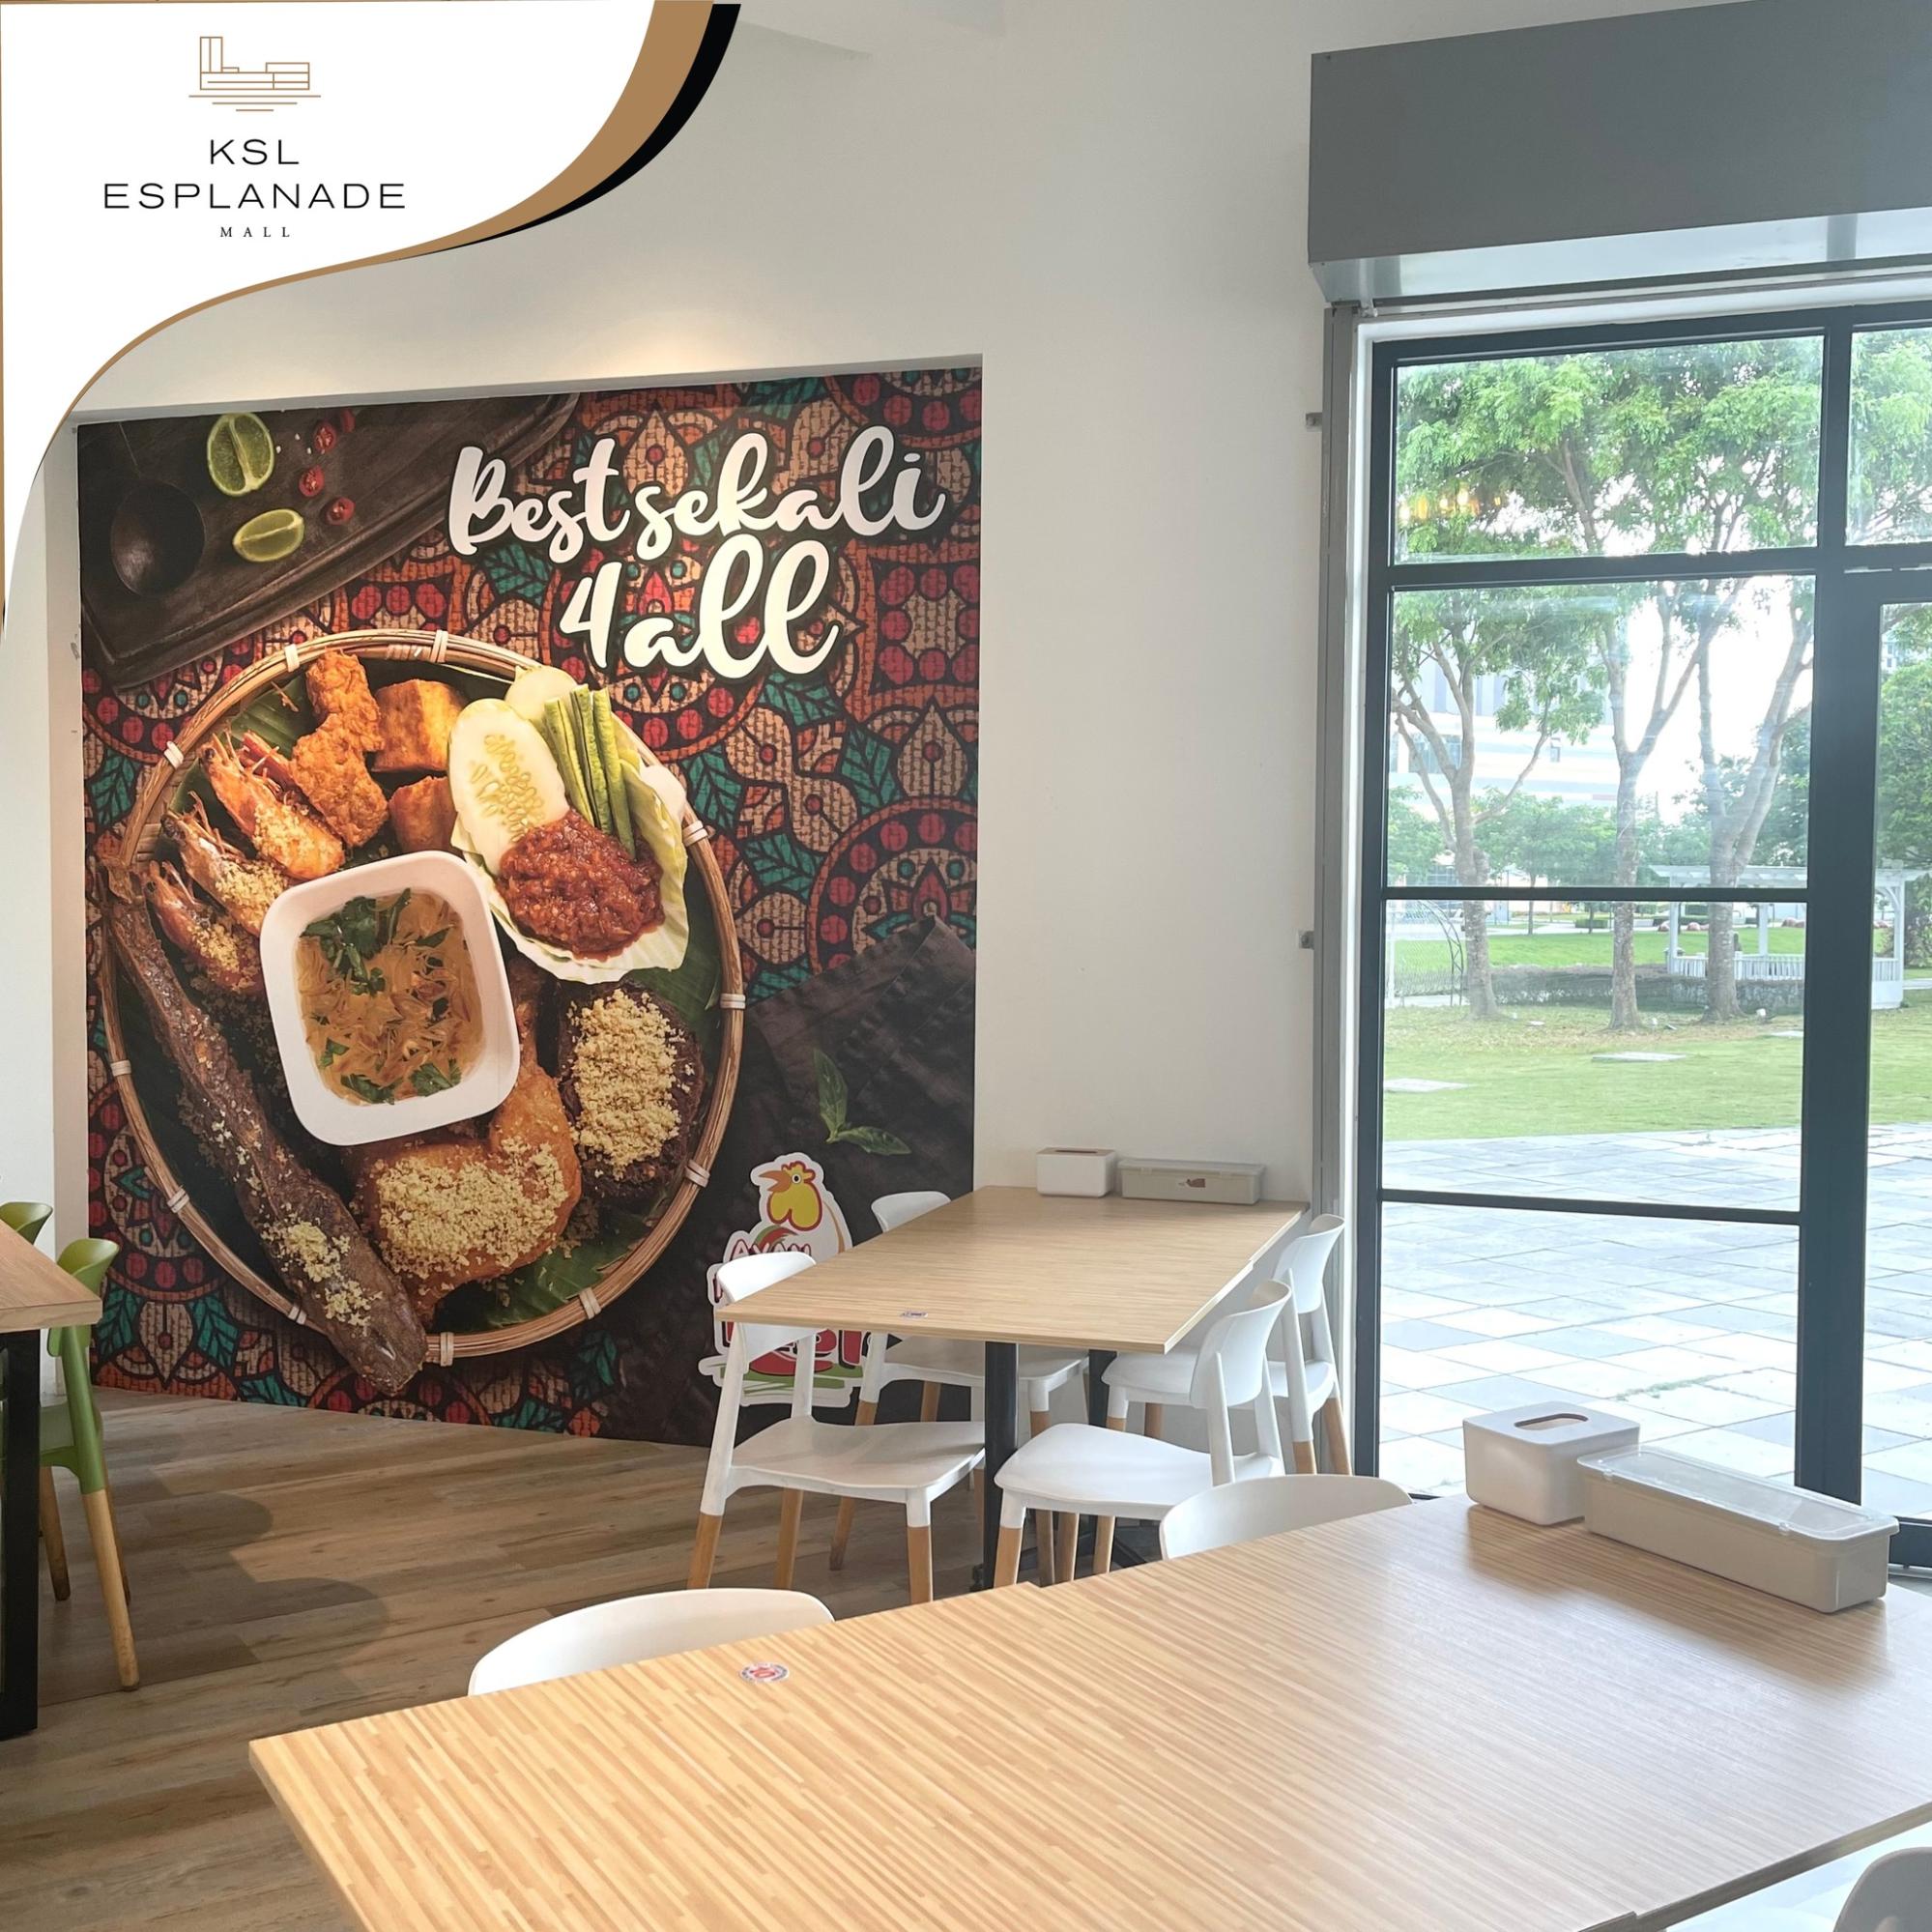 Ayam Penyet restaurant - KSL Esplanade Mall opening in Klang